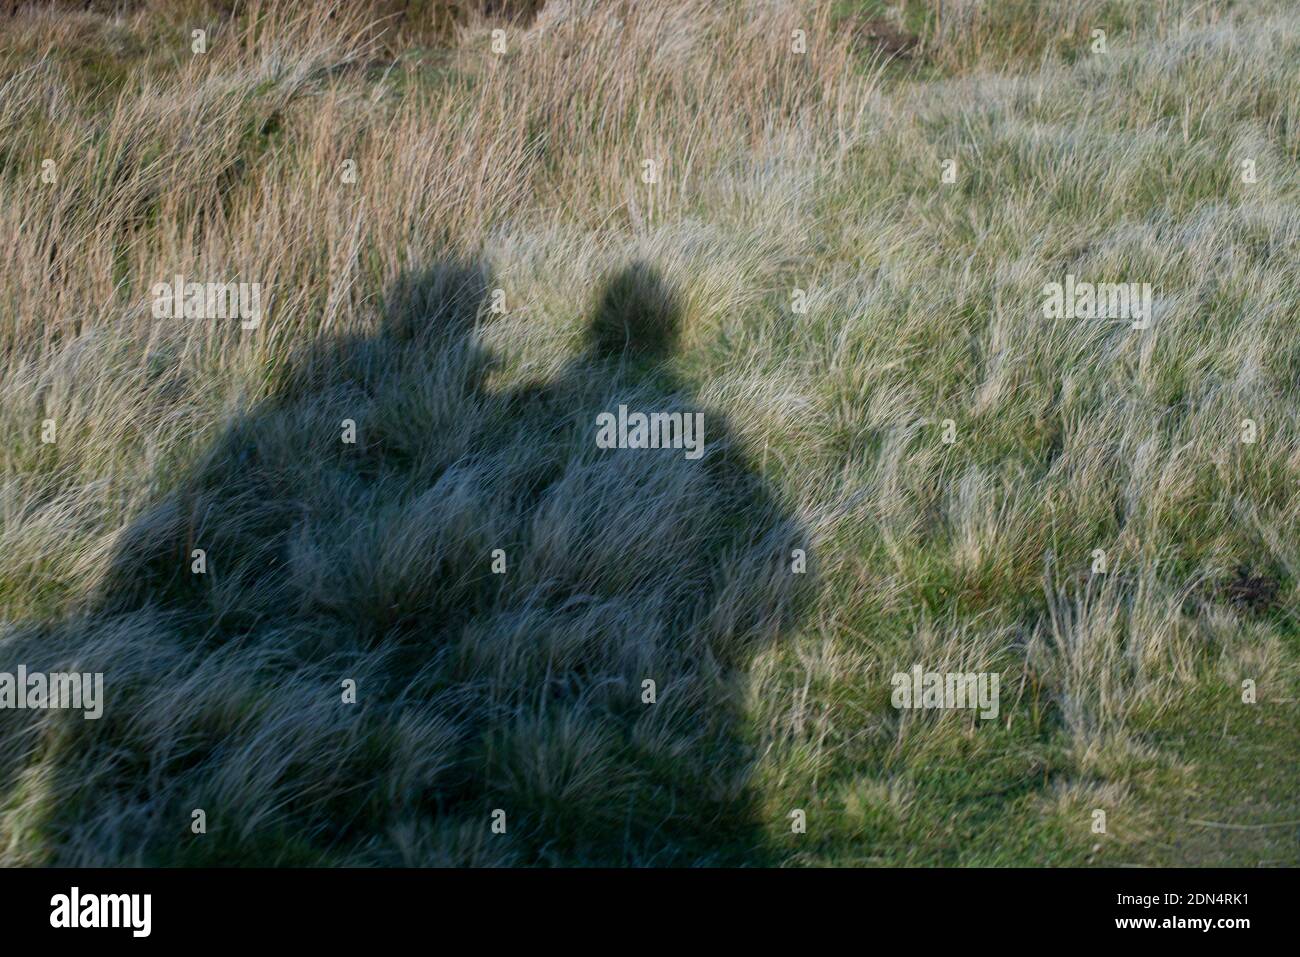 Una imagen simple de las sombras de dos personas de pie cerca juntos en praderas abiertas Foto de stock